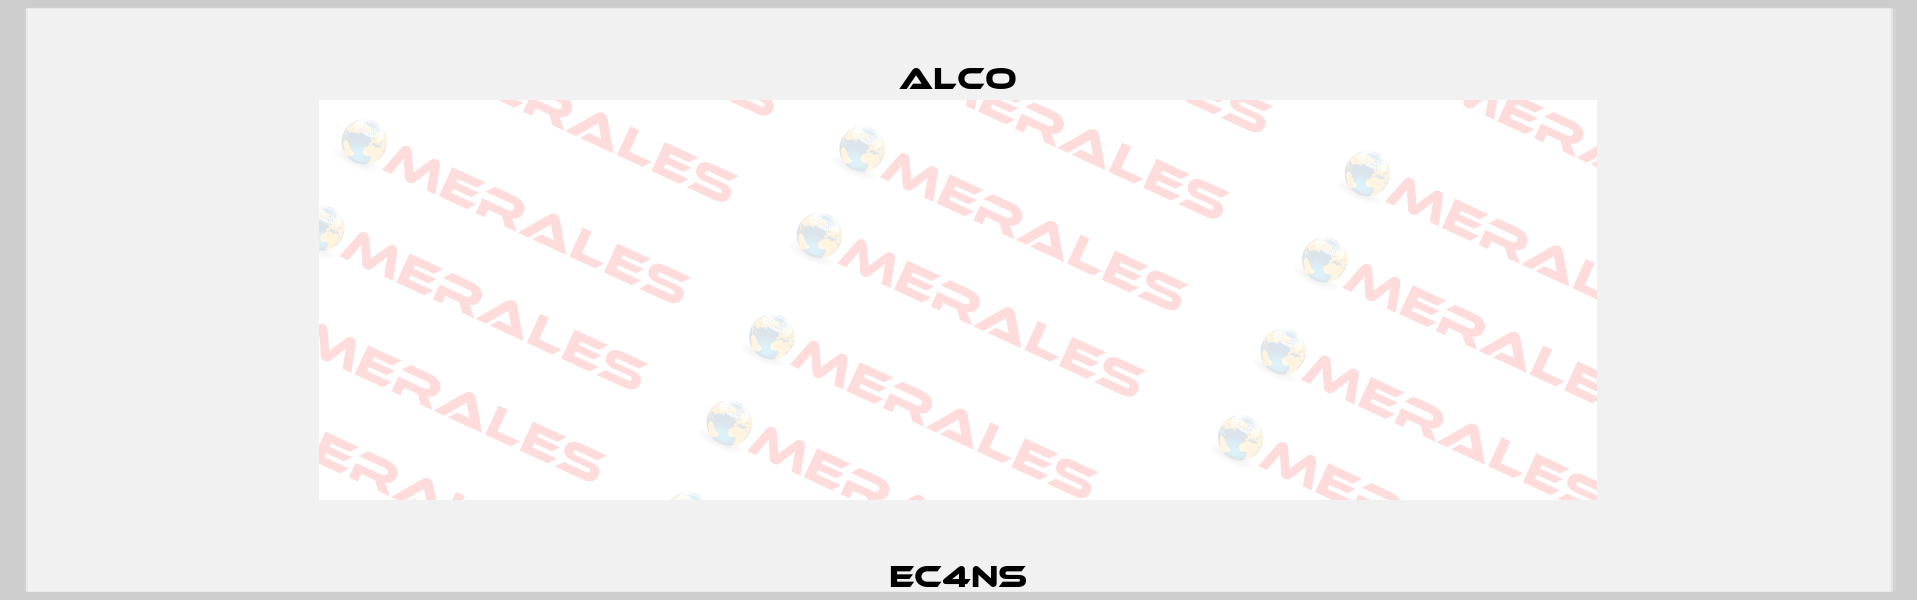 EC4NS Alco